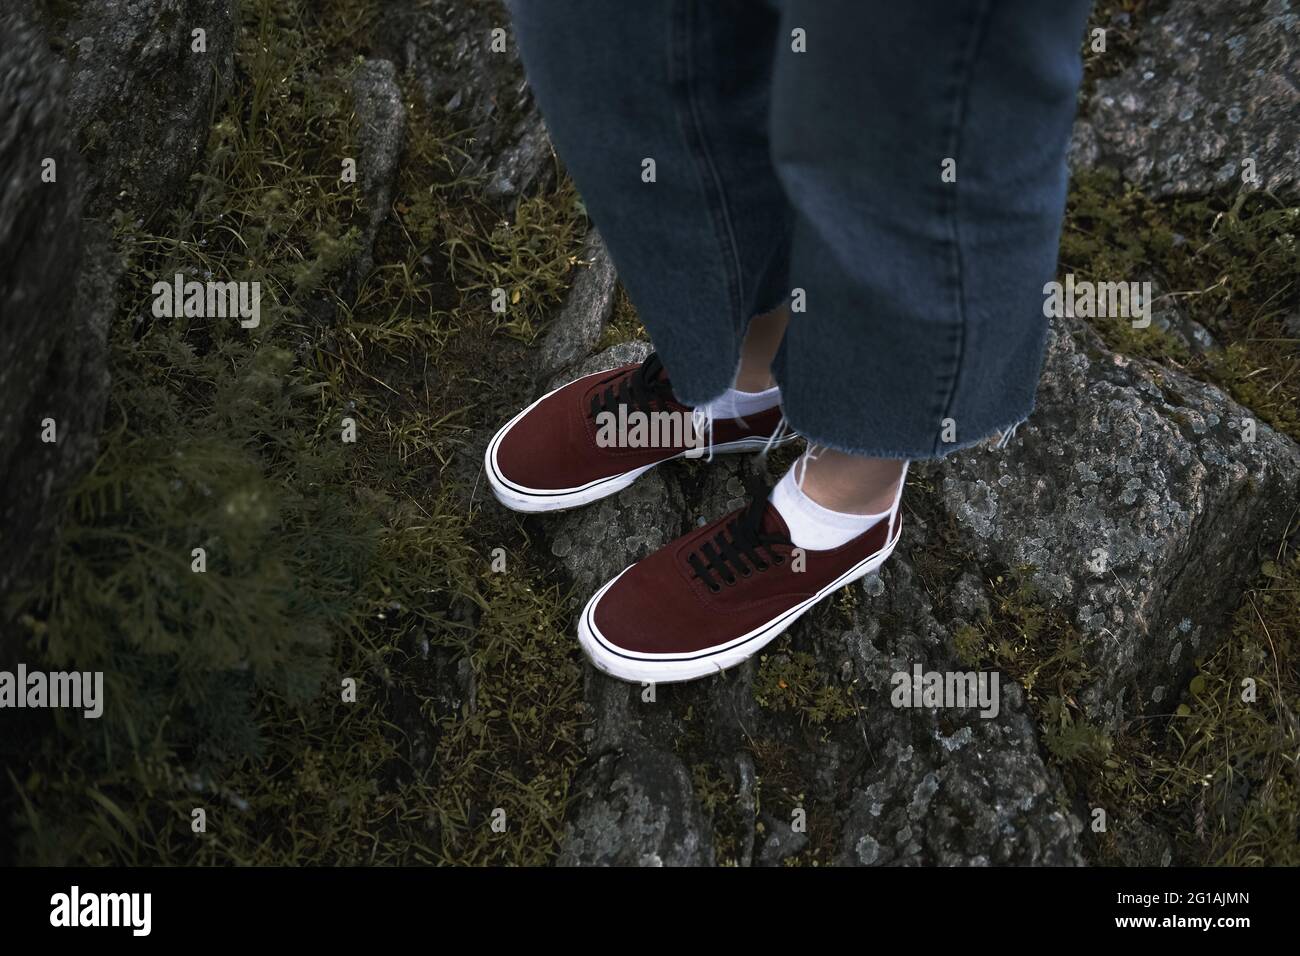 Dunkelrote Schuhe auf den Felsen, Wandern im Freien in der Natur  Stockfotografie - Alamy